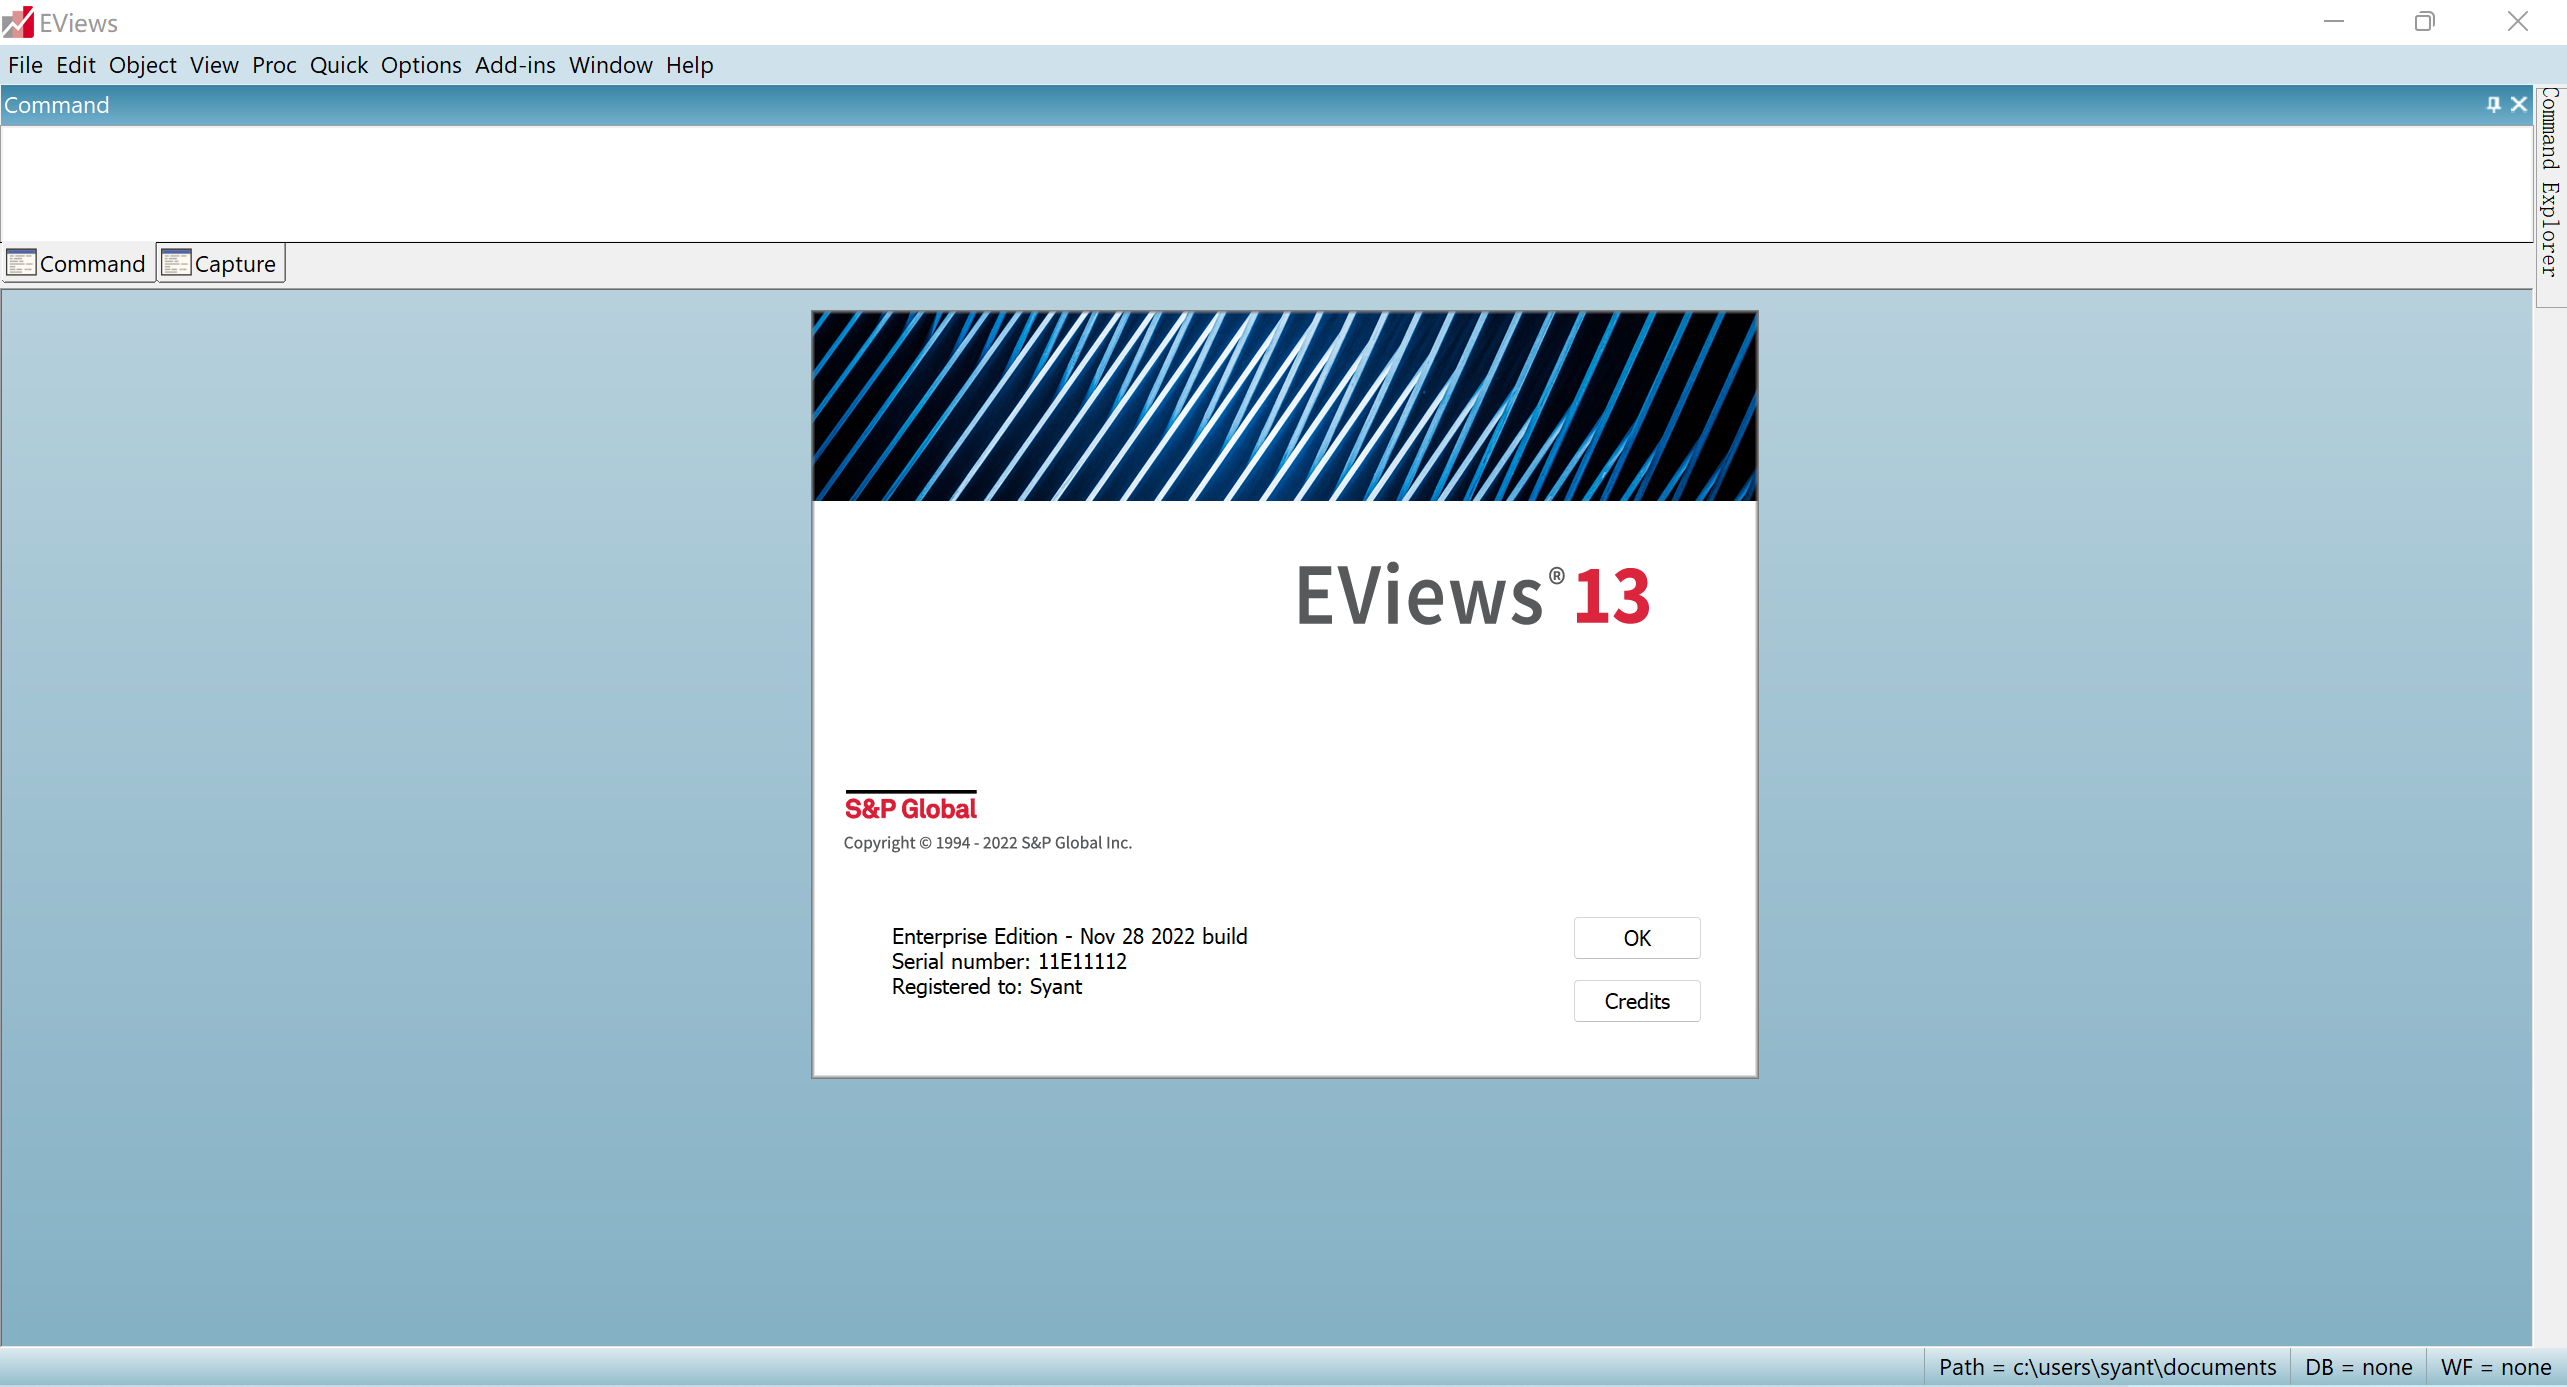 计量经济学 IHS EViews Enterprise Edition 13.0 Build 2022-11-28 x64(图1)